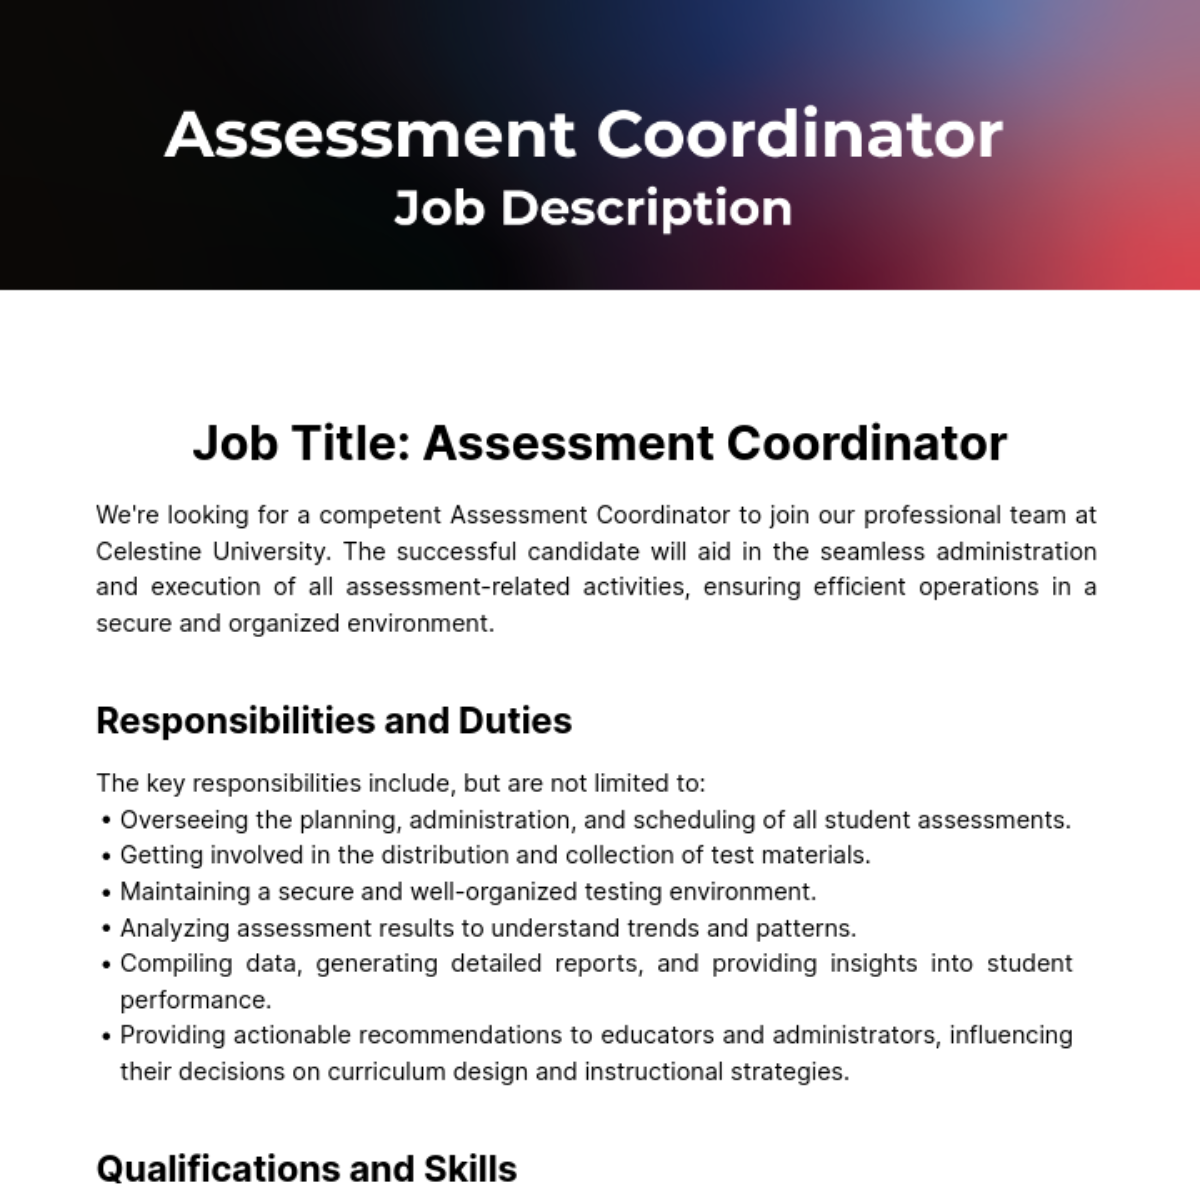 Assessment Coordinator Job Description Template